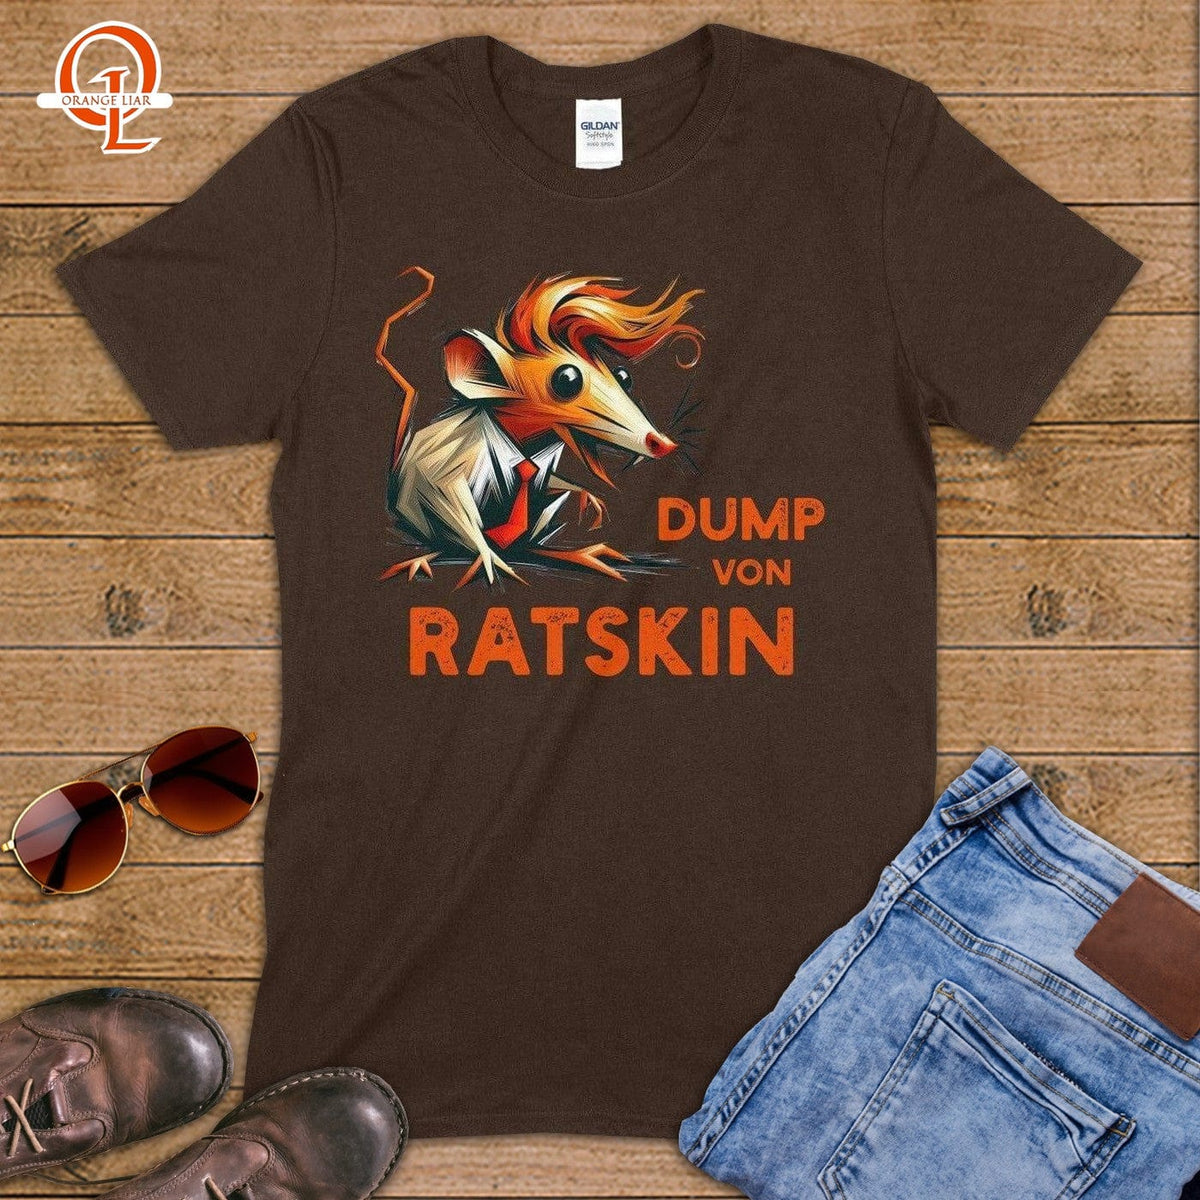 Dump von Ratskin ~ T-Shirt-Orange Liar